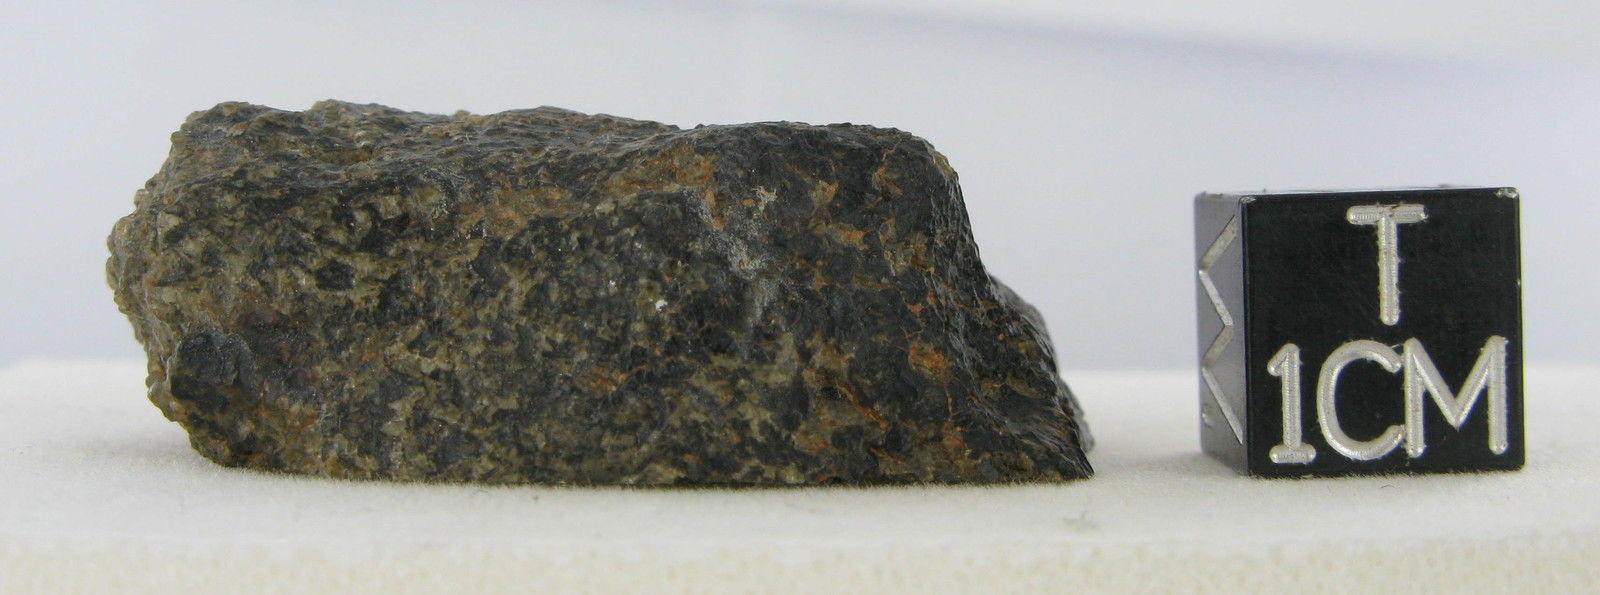 martian meteorite - NWA 2975 13.jpg